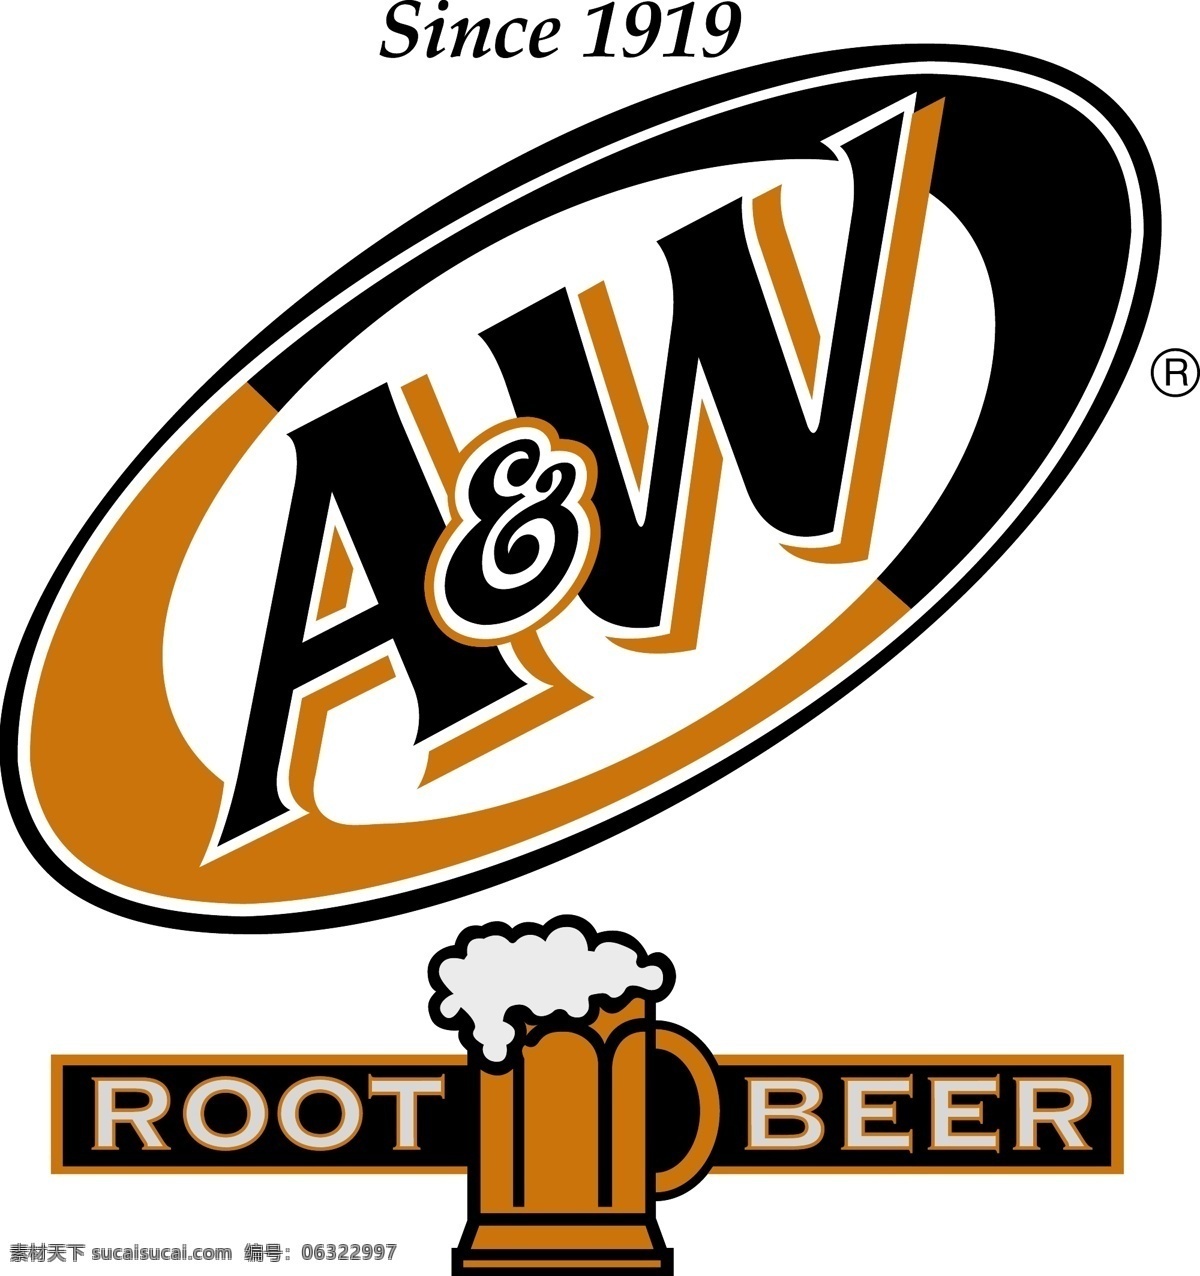 世界 企业 标志 矢量图 源文件 logo 国外 啤酒 品牌